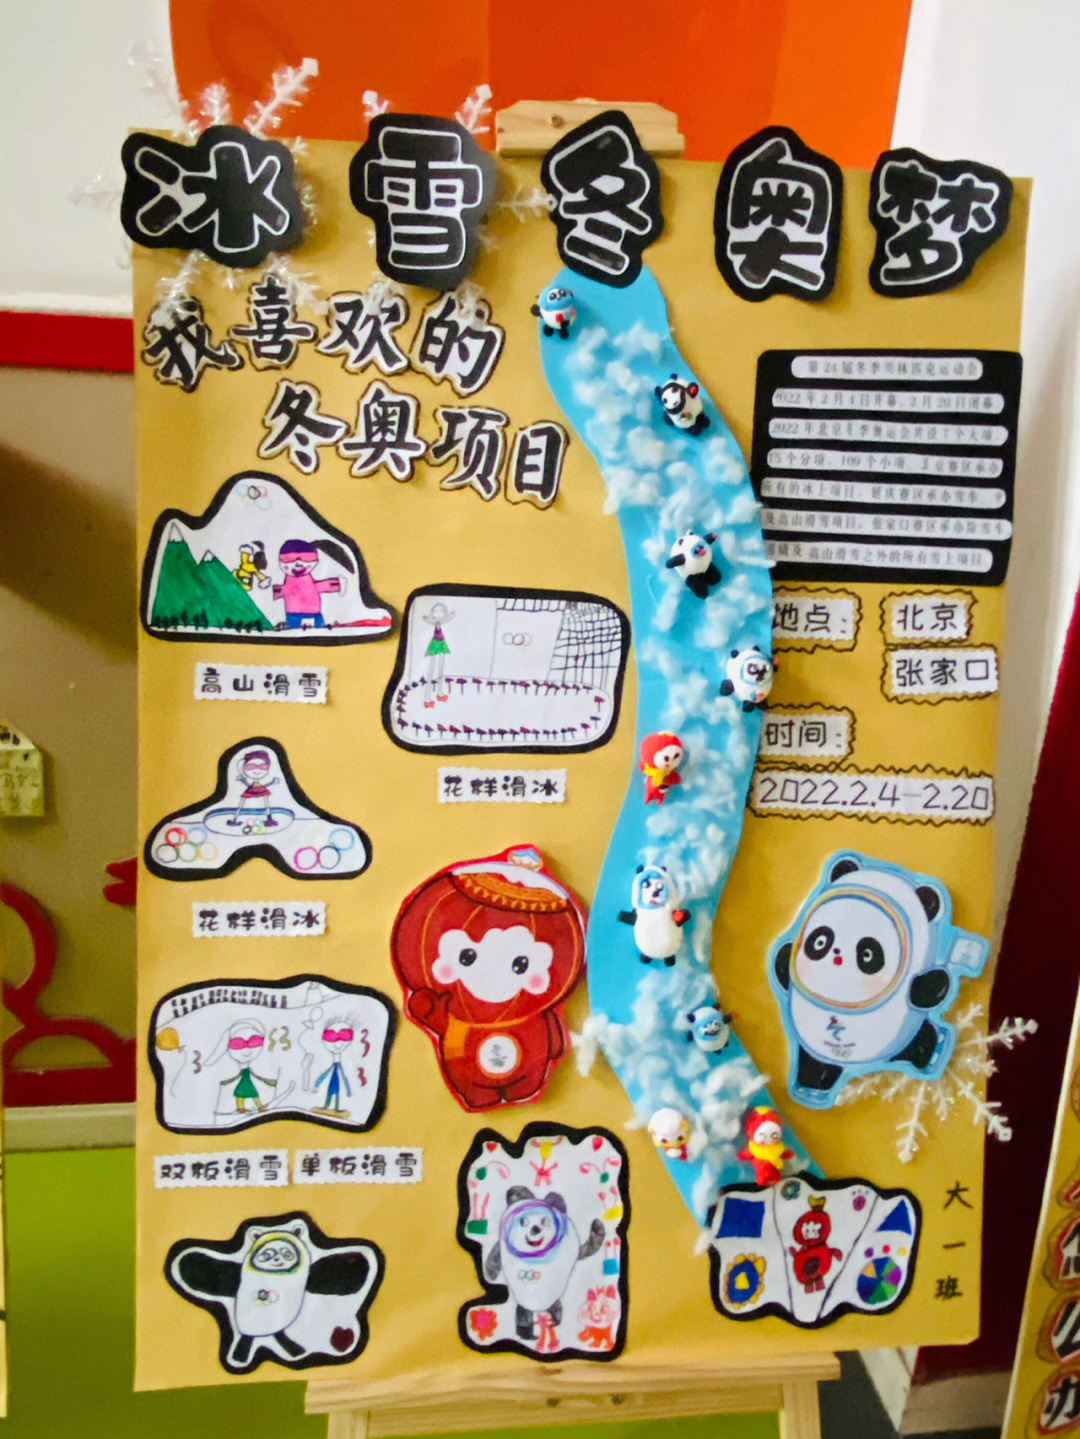 幼儿园北京冬奥会展板图片